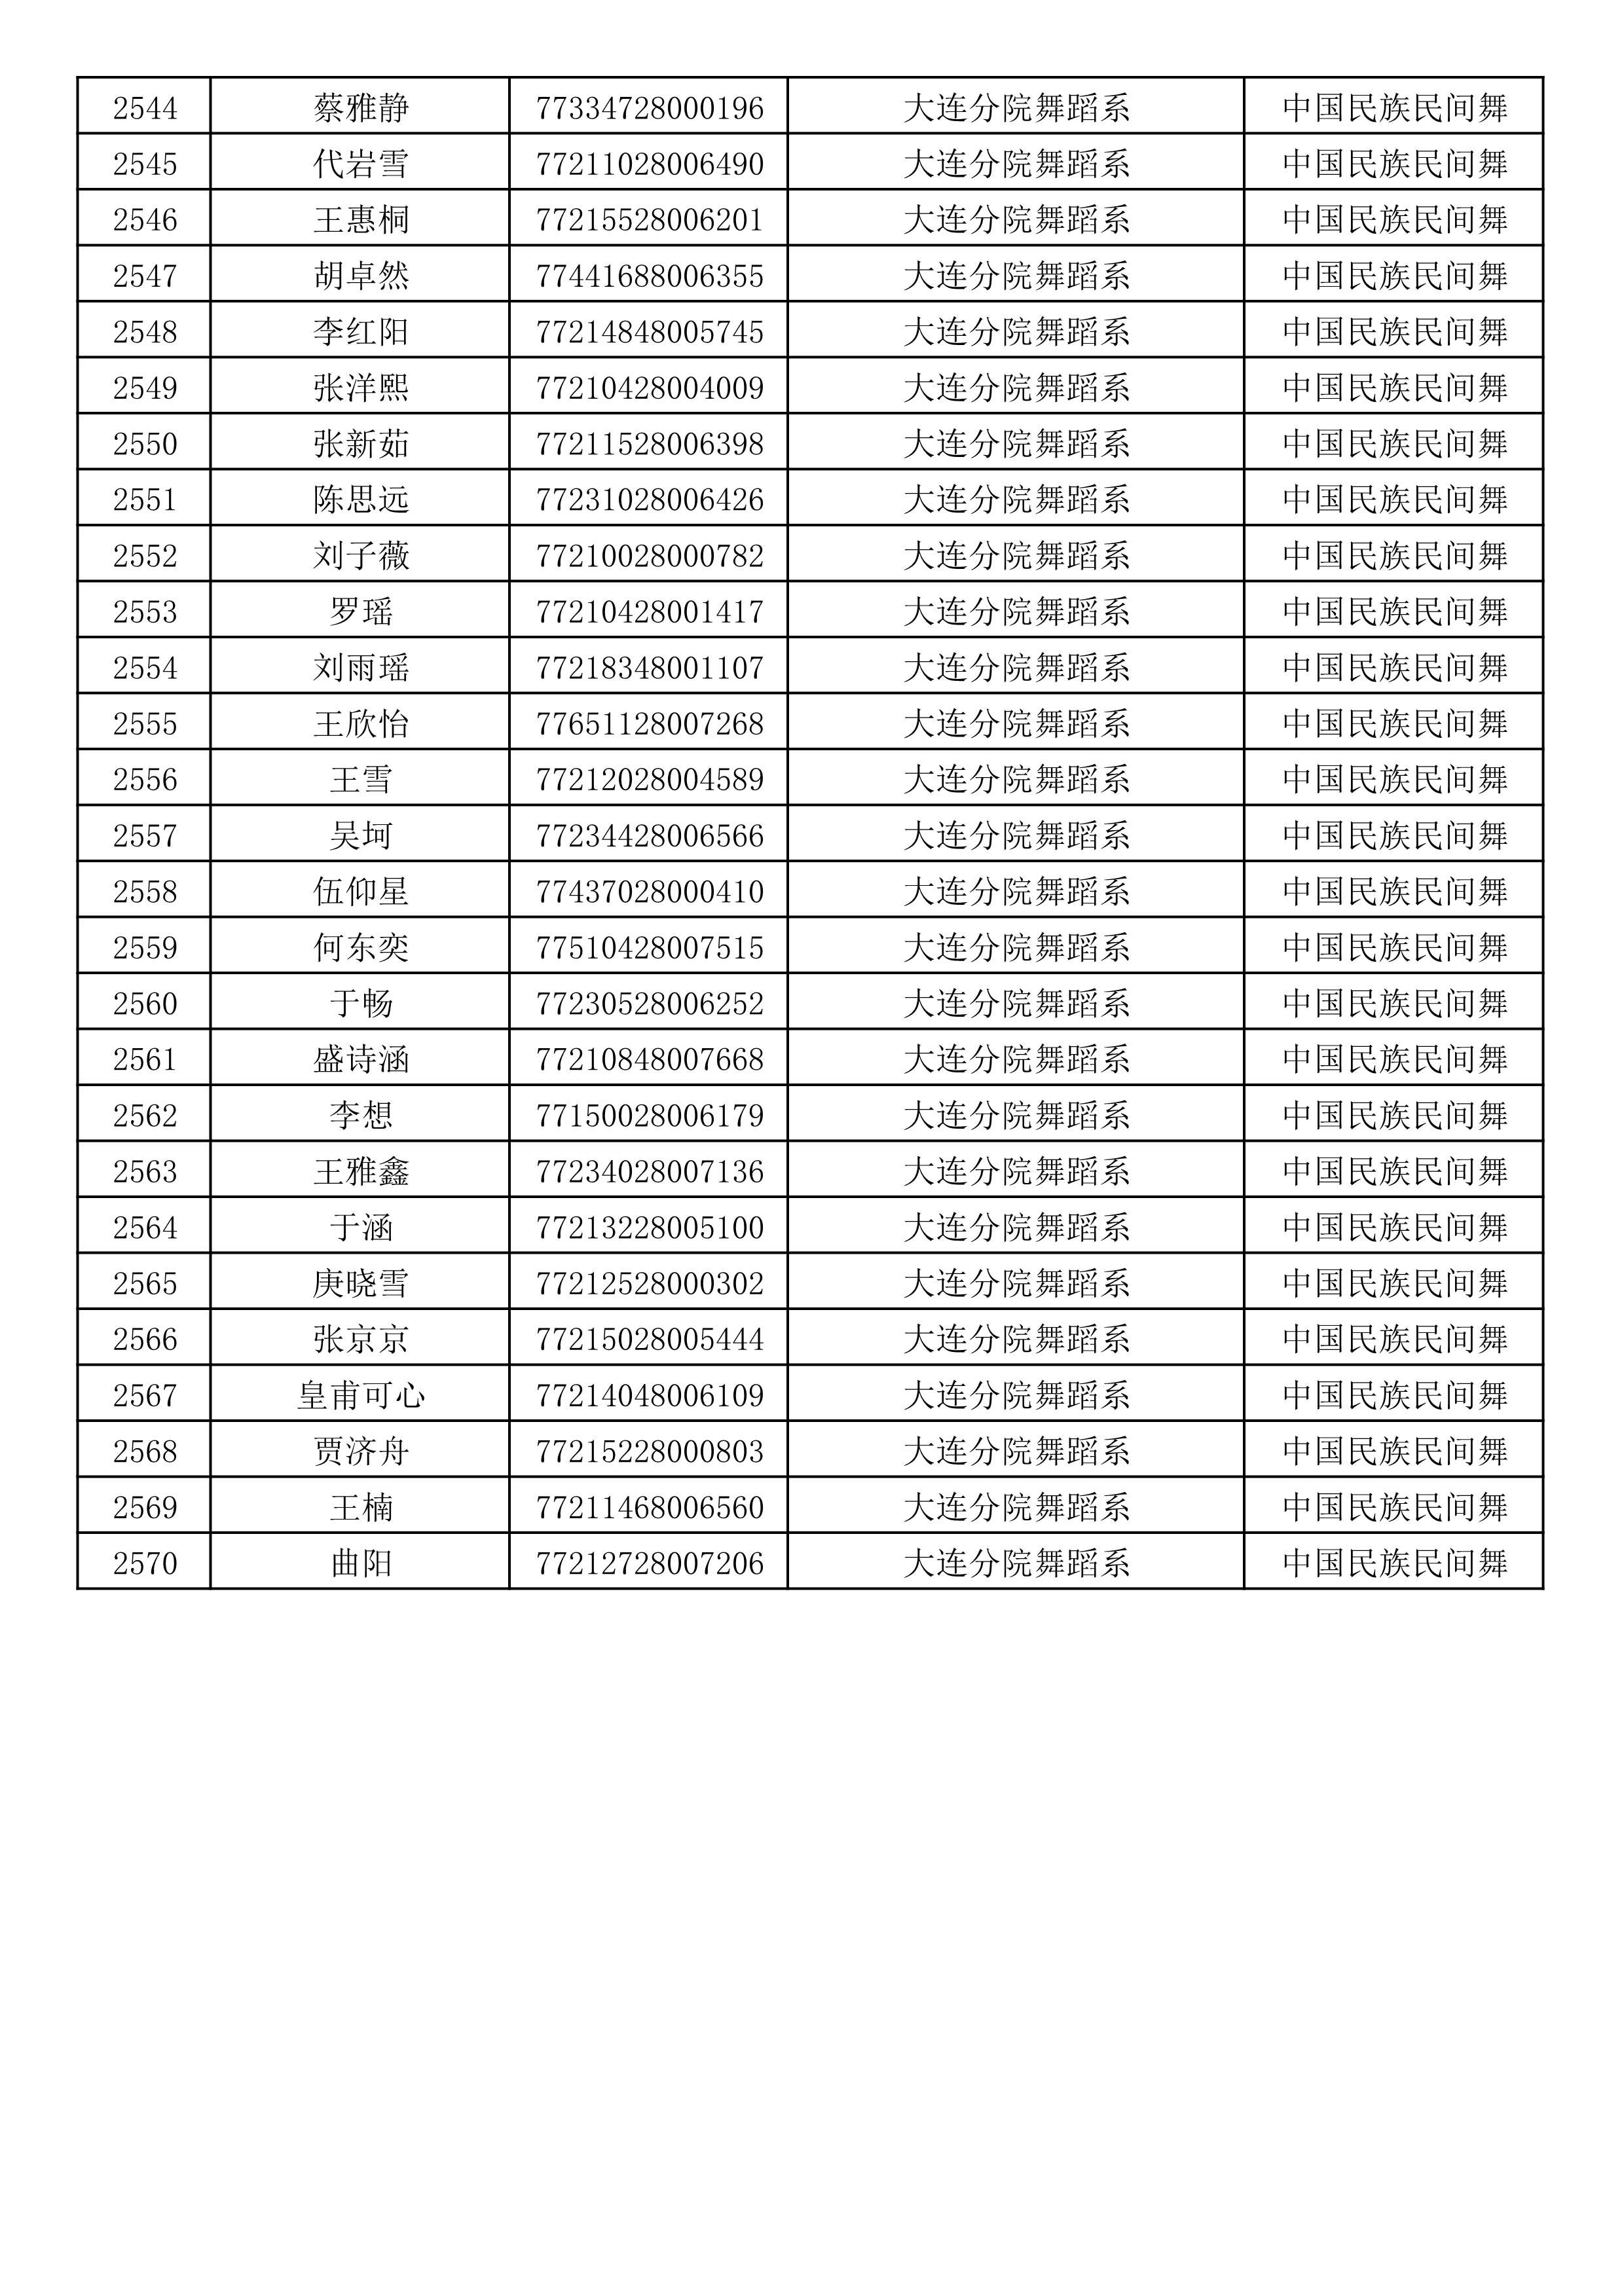 沈阳音乐学院2019年本科招生考试初试合格名单_68.jpg